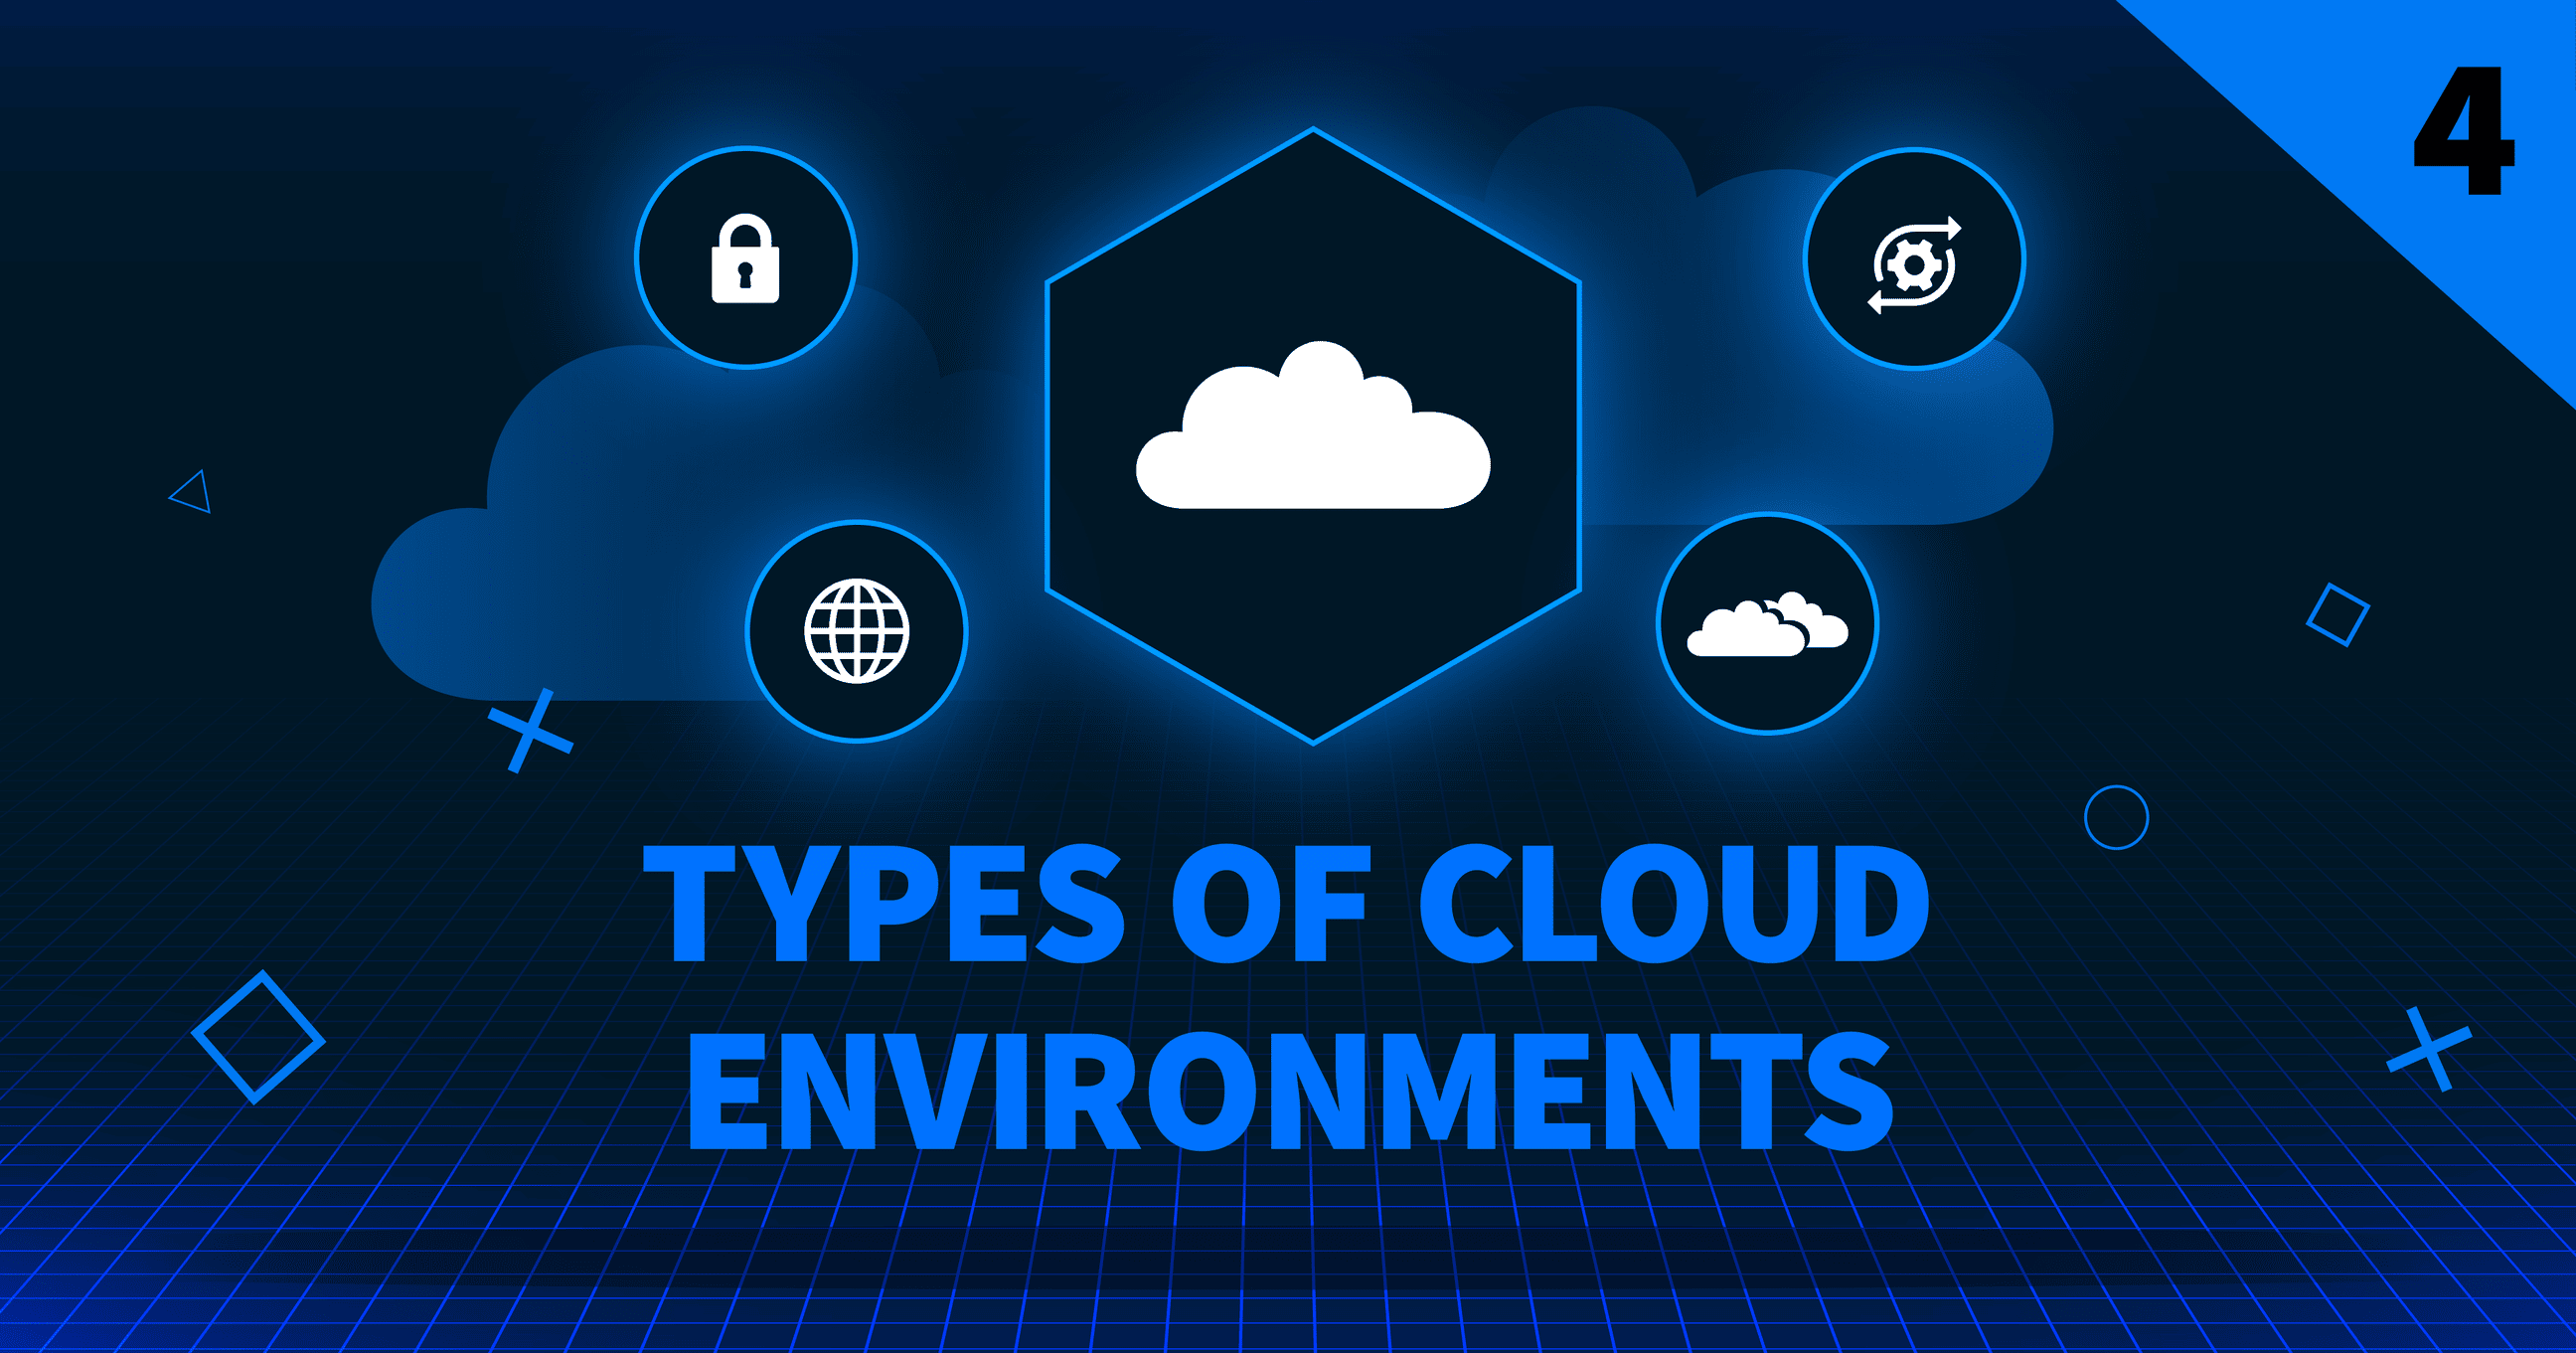 Tipos de ambientes de nuvem Imagem do cabeçalho do blog